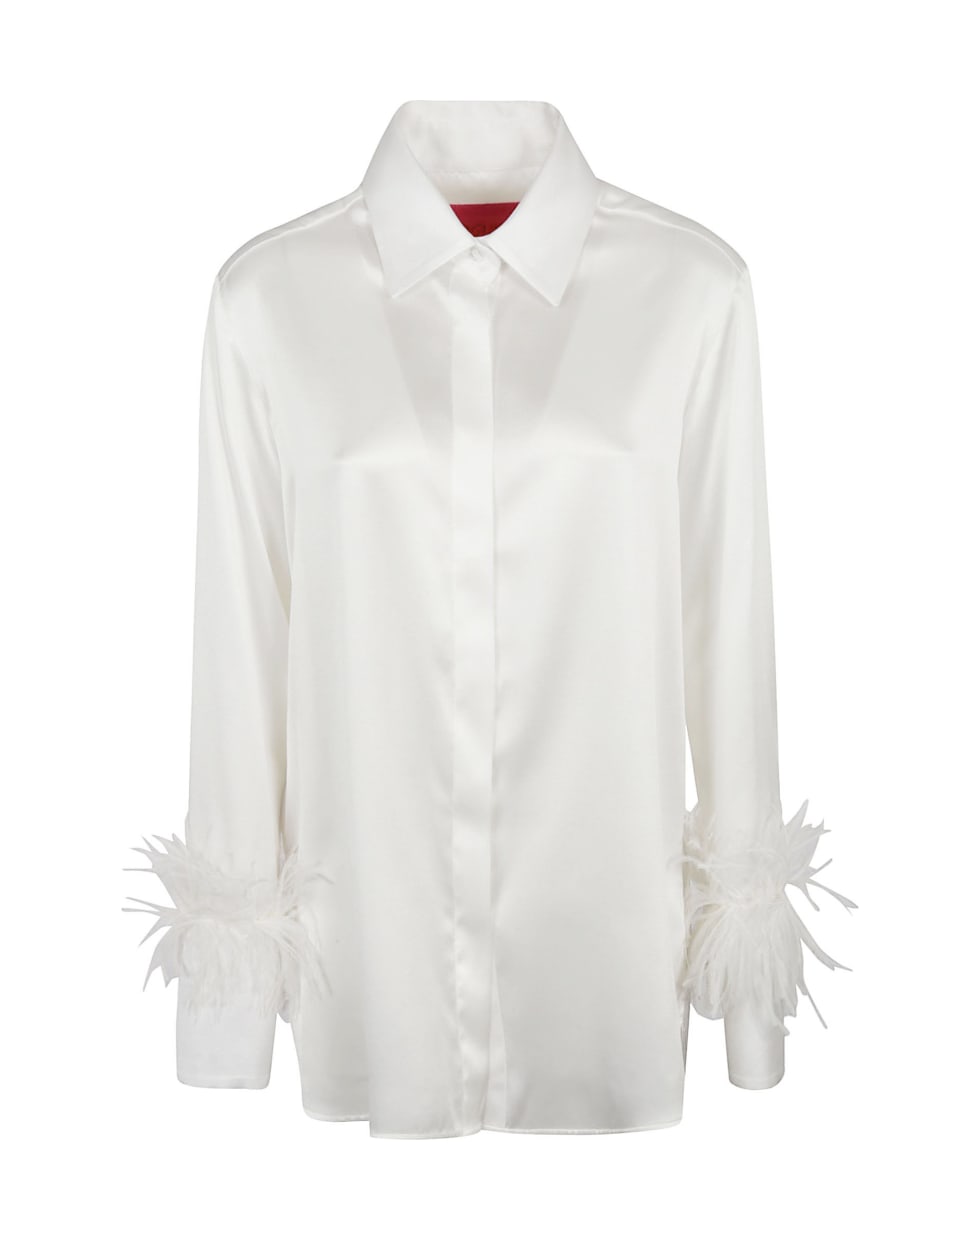 Verguenza Envidia Shirt - White